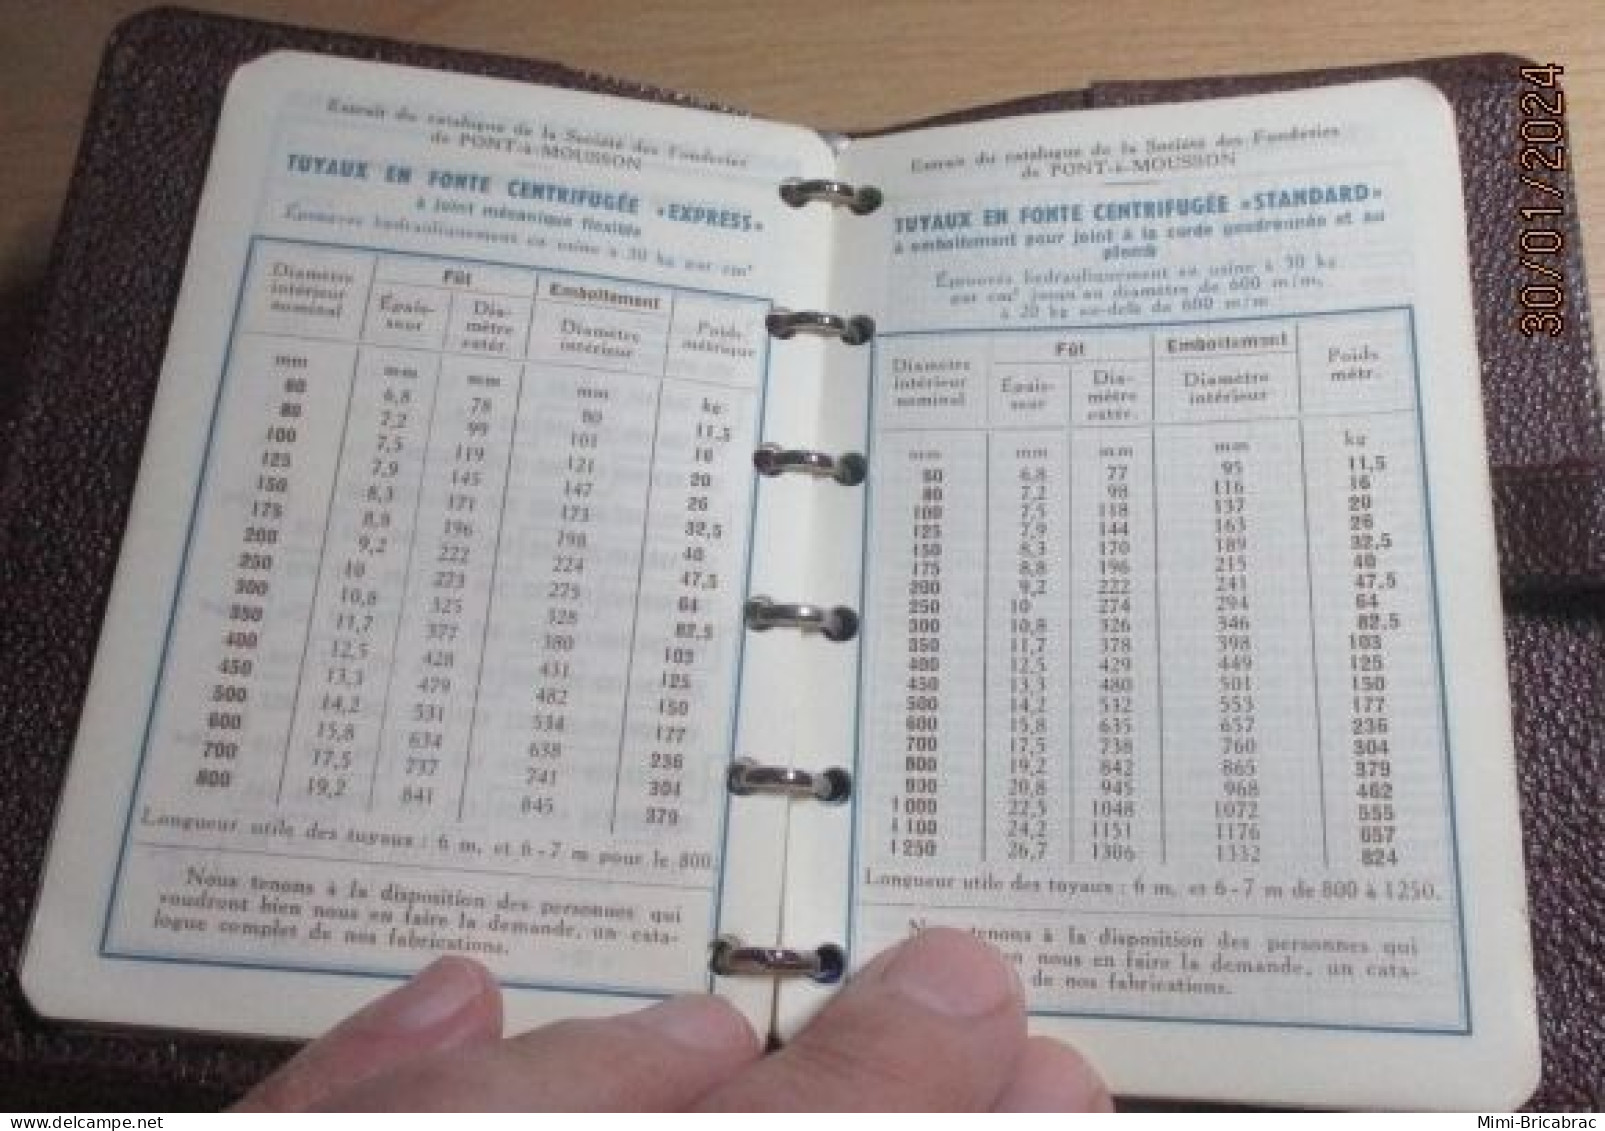 Agenda de poche PONT A MOUSSON année 1956 , exc. état , dim 13 cm x 9 , plein d'infos utile, Empire Colonial Français